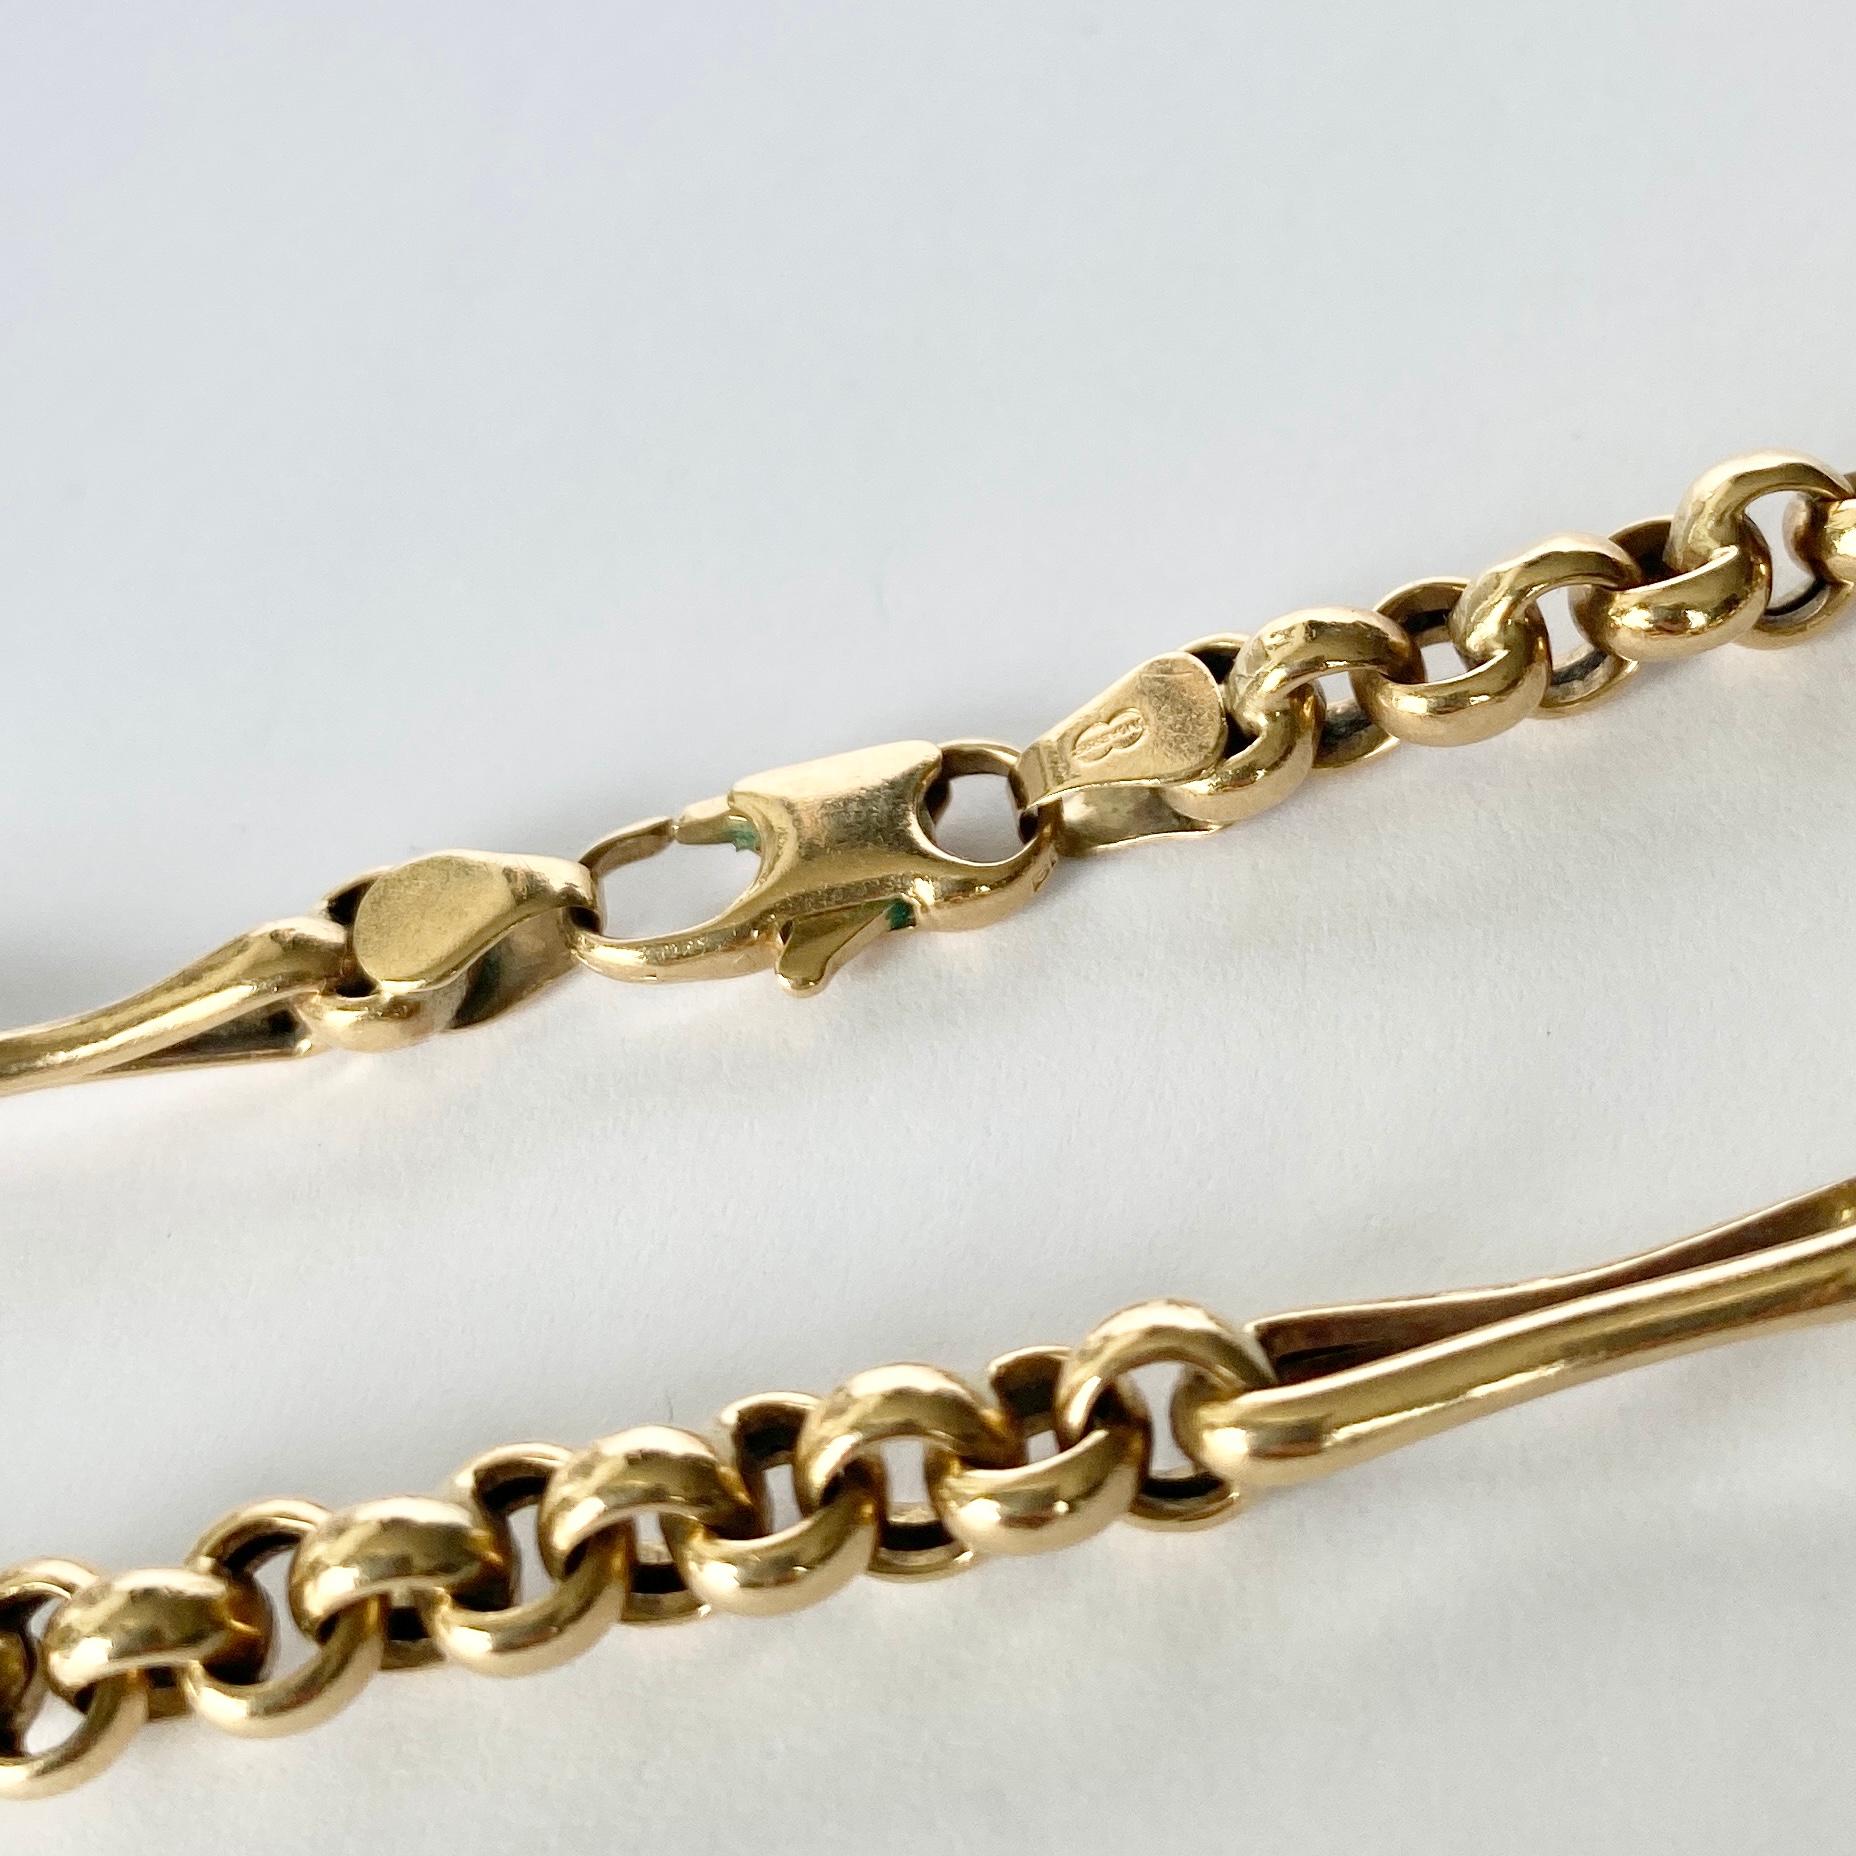 Ce magnifique bracelet est réalisé en or 9 carats. L'un des styles ressemble au maillon de trombone et l'autre est une chaîne de béliers.

Longueur : 19cm 
Largeur : 5mm 

Poids : 5.6g